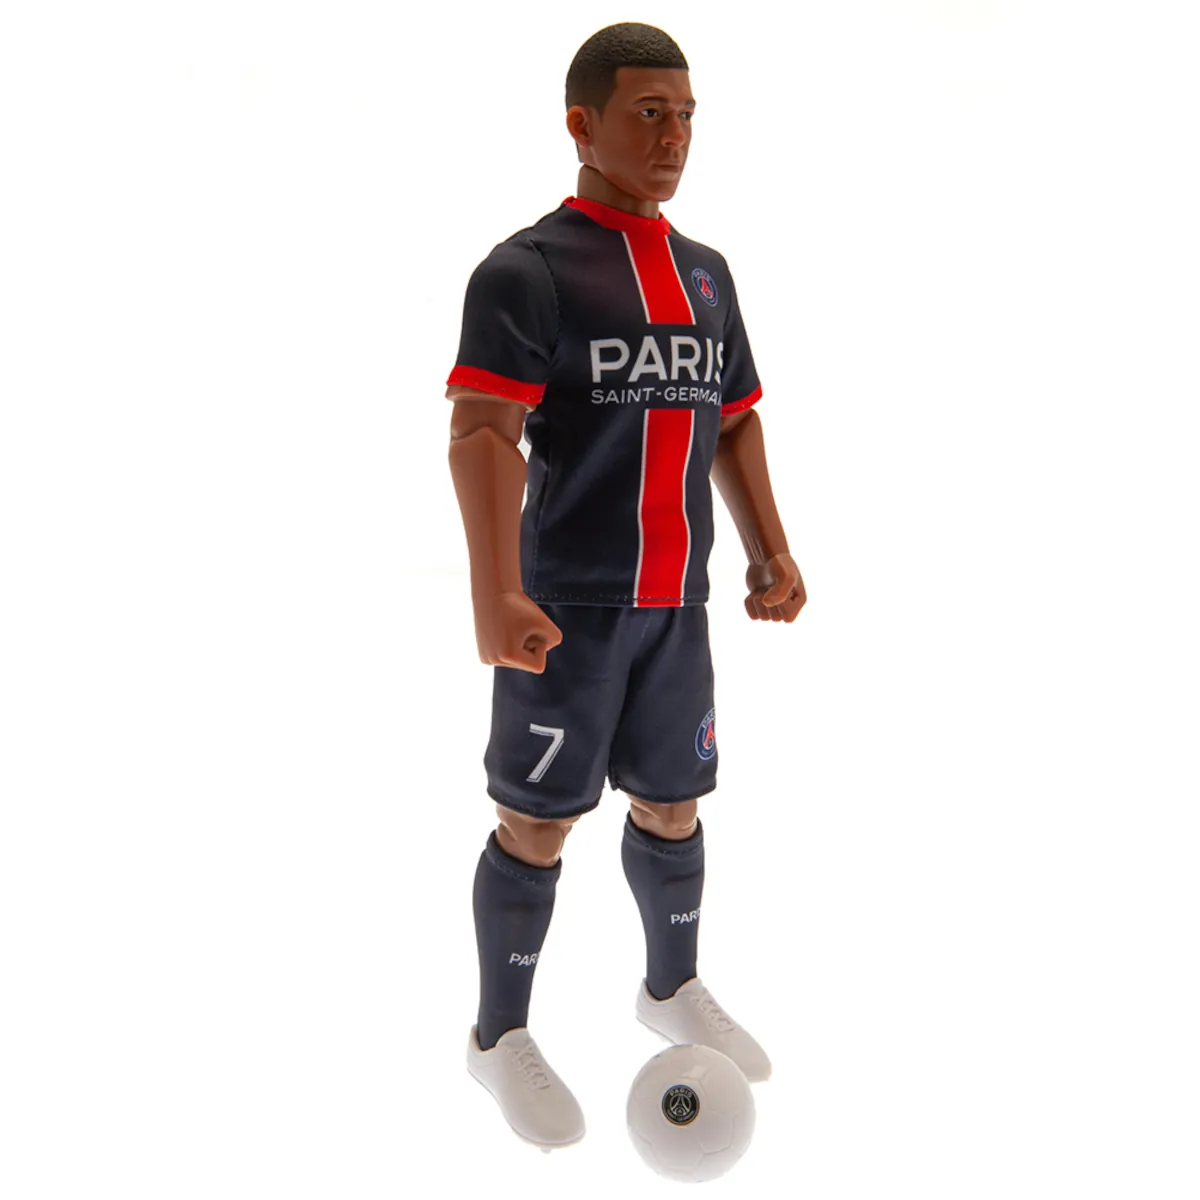 TM-03861 Paris Saint-Germain FC Kylian Mbappé 30cm Action Figure 2